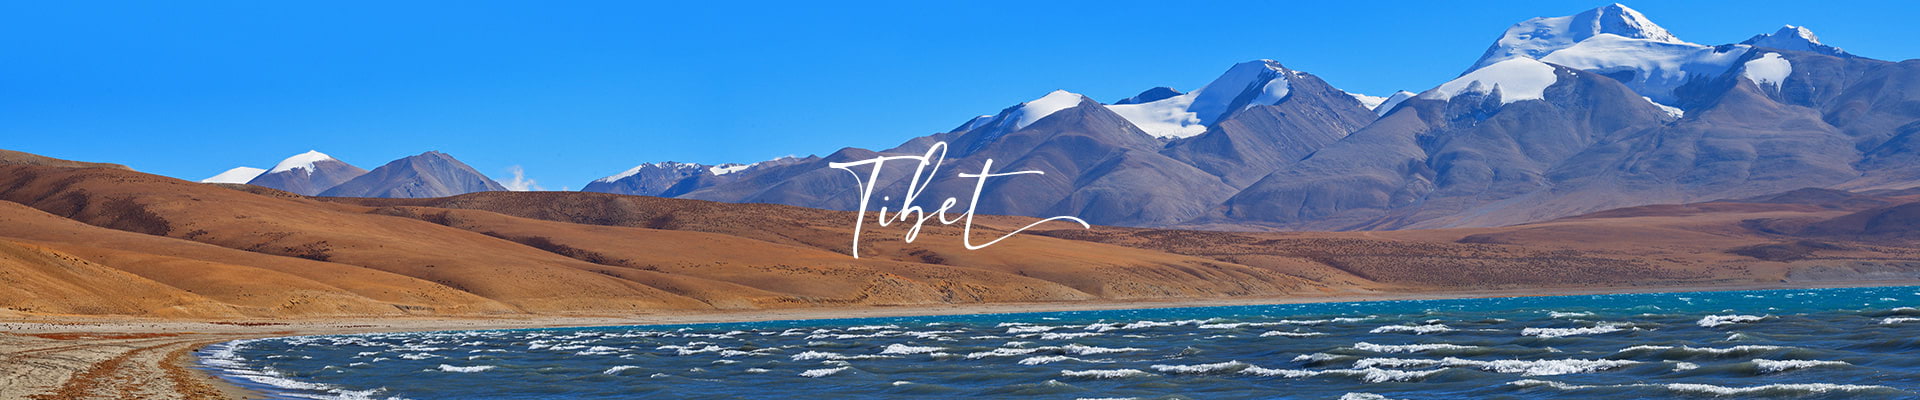 images/panos/desktop/tibet